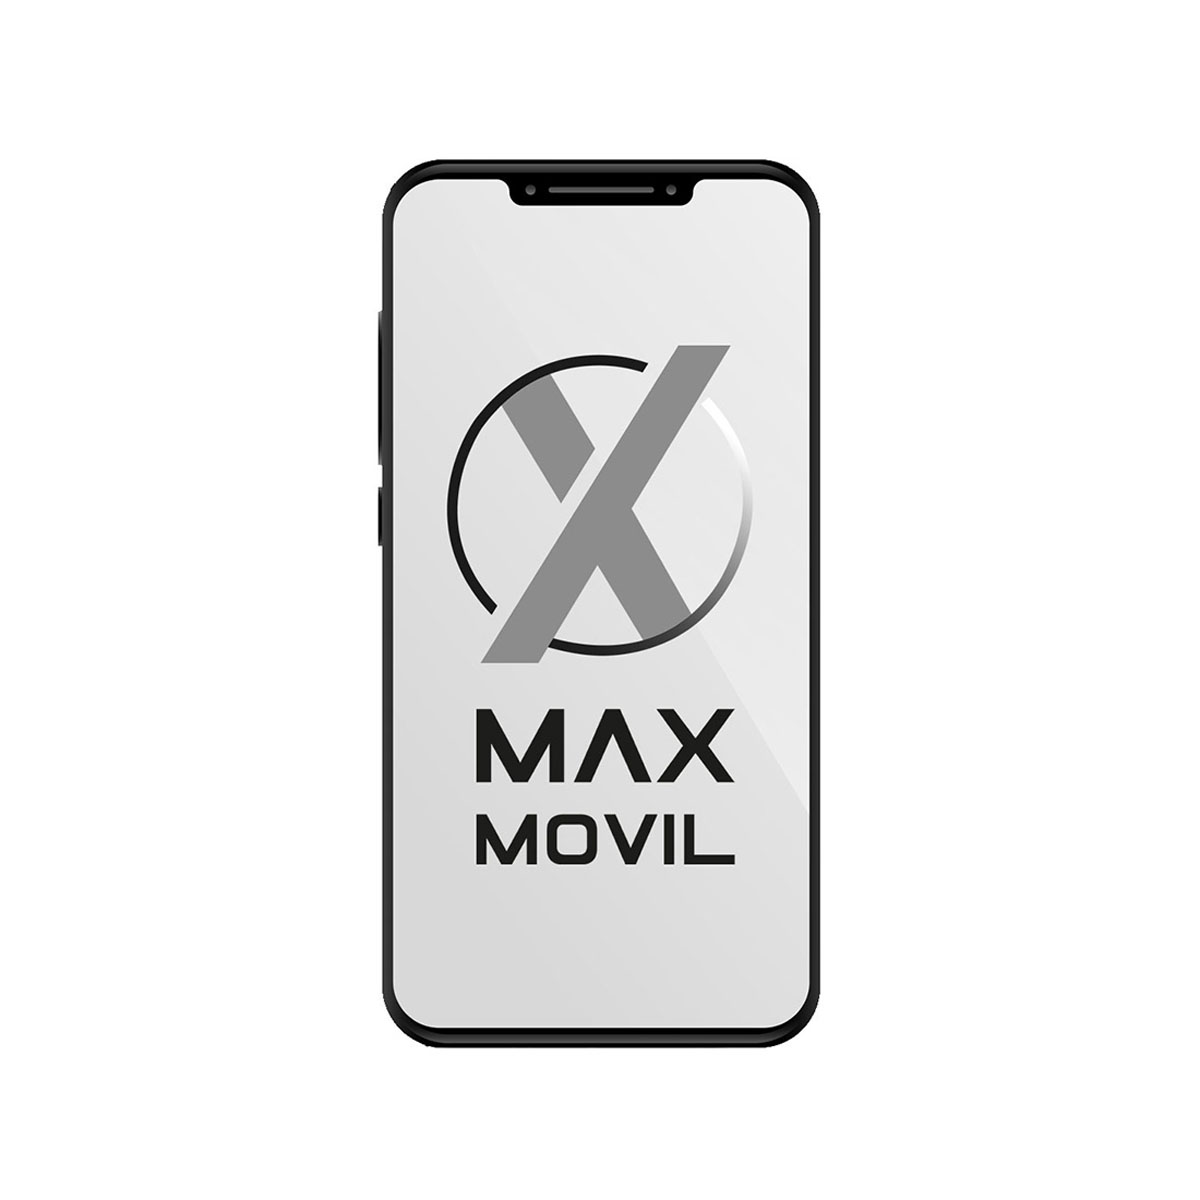 [Hilo Oficial] MaxMovil.com. Ofertas y promociones para GSMspain.